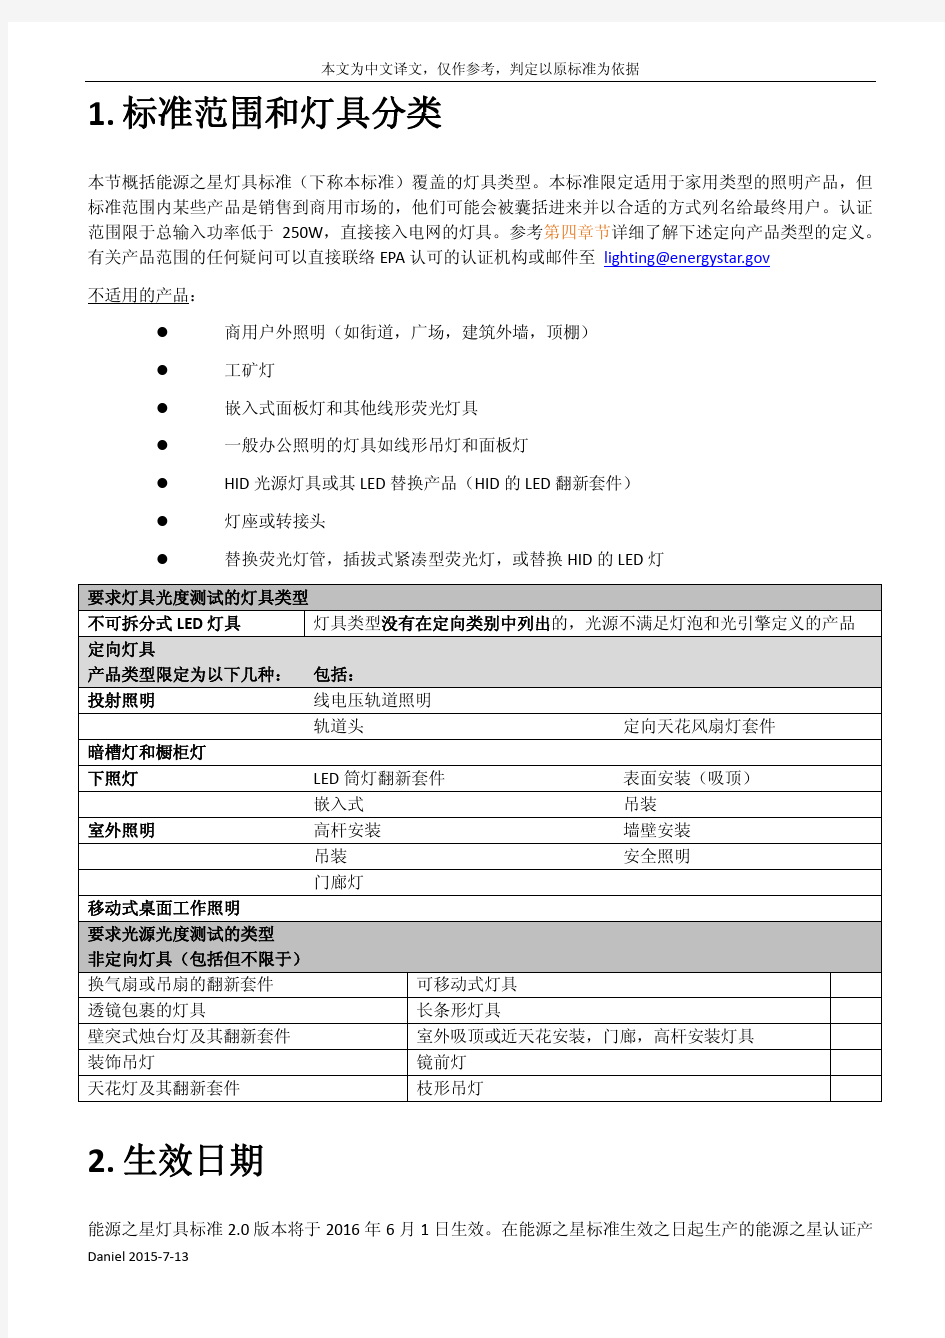 能源之星灯具标准2.0版本 中文翻译(1)